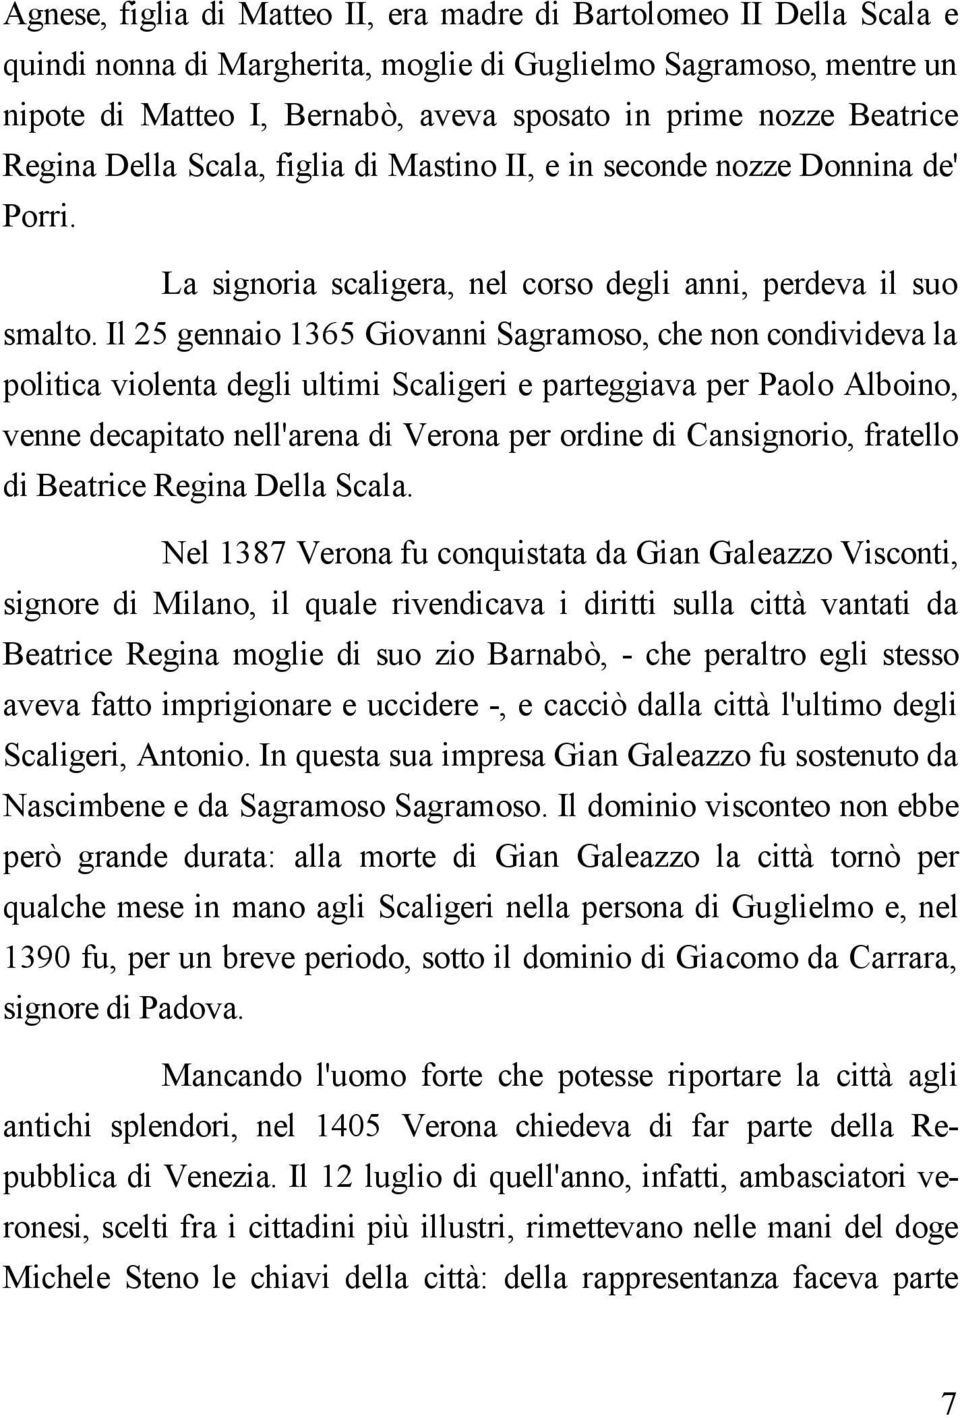 Il 25 gennaio 1365 Giovanni Sagramoso, che non condivideva la politica violenta degli ultimi Scaligeri e parteggiava per Paolo Alboino, venne decapitato nell'arena di Verona per ordine di